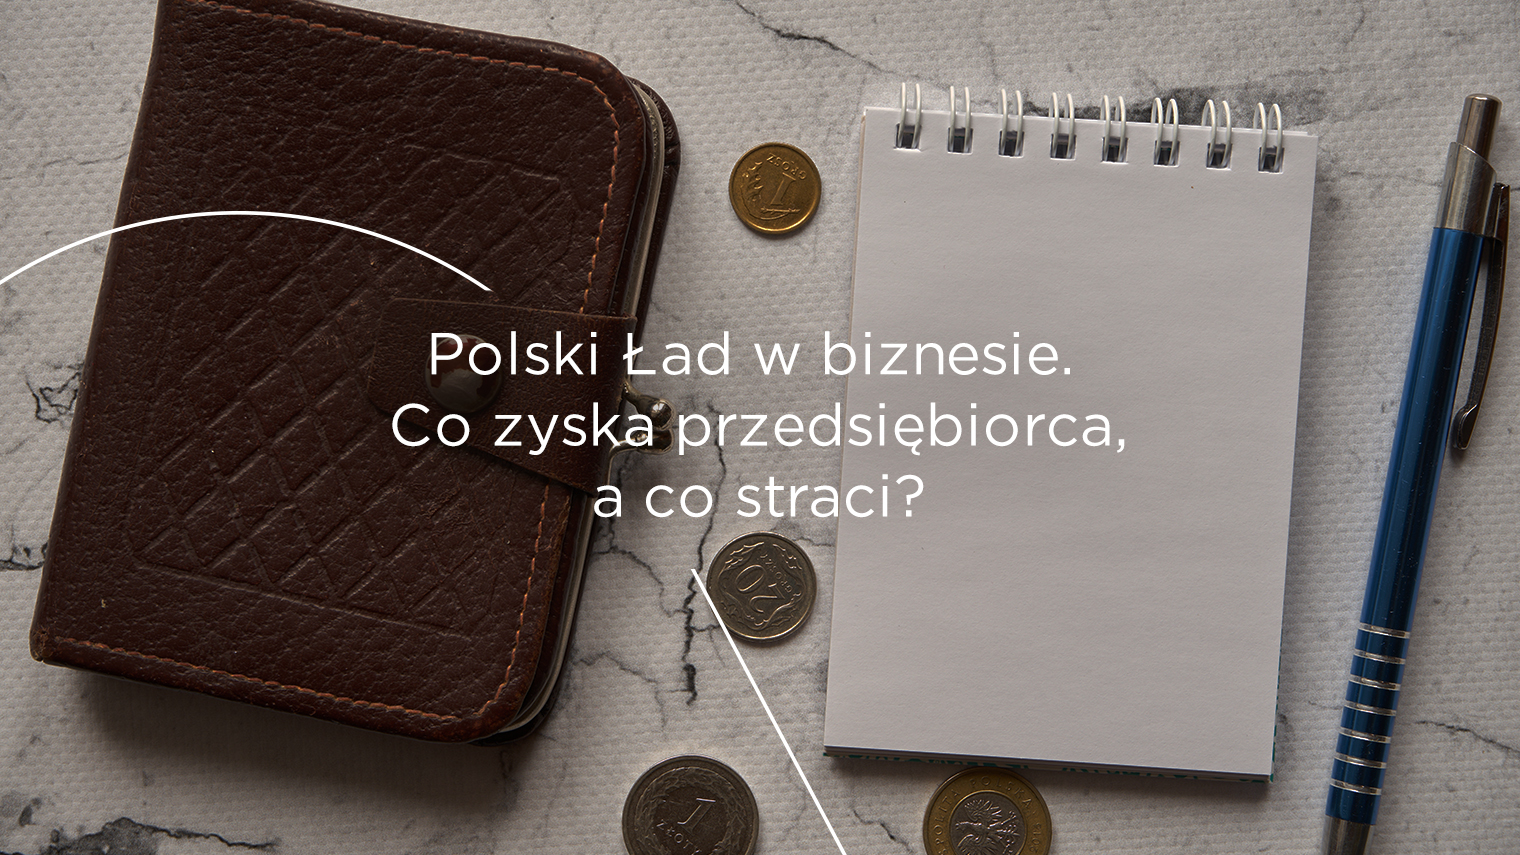 Polski Ład w&nbsp;biznesie, czyli co&nbsp;przedsiębiorca zyska, a&nbsp;co&nbsp;straci?